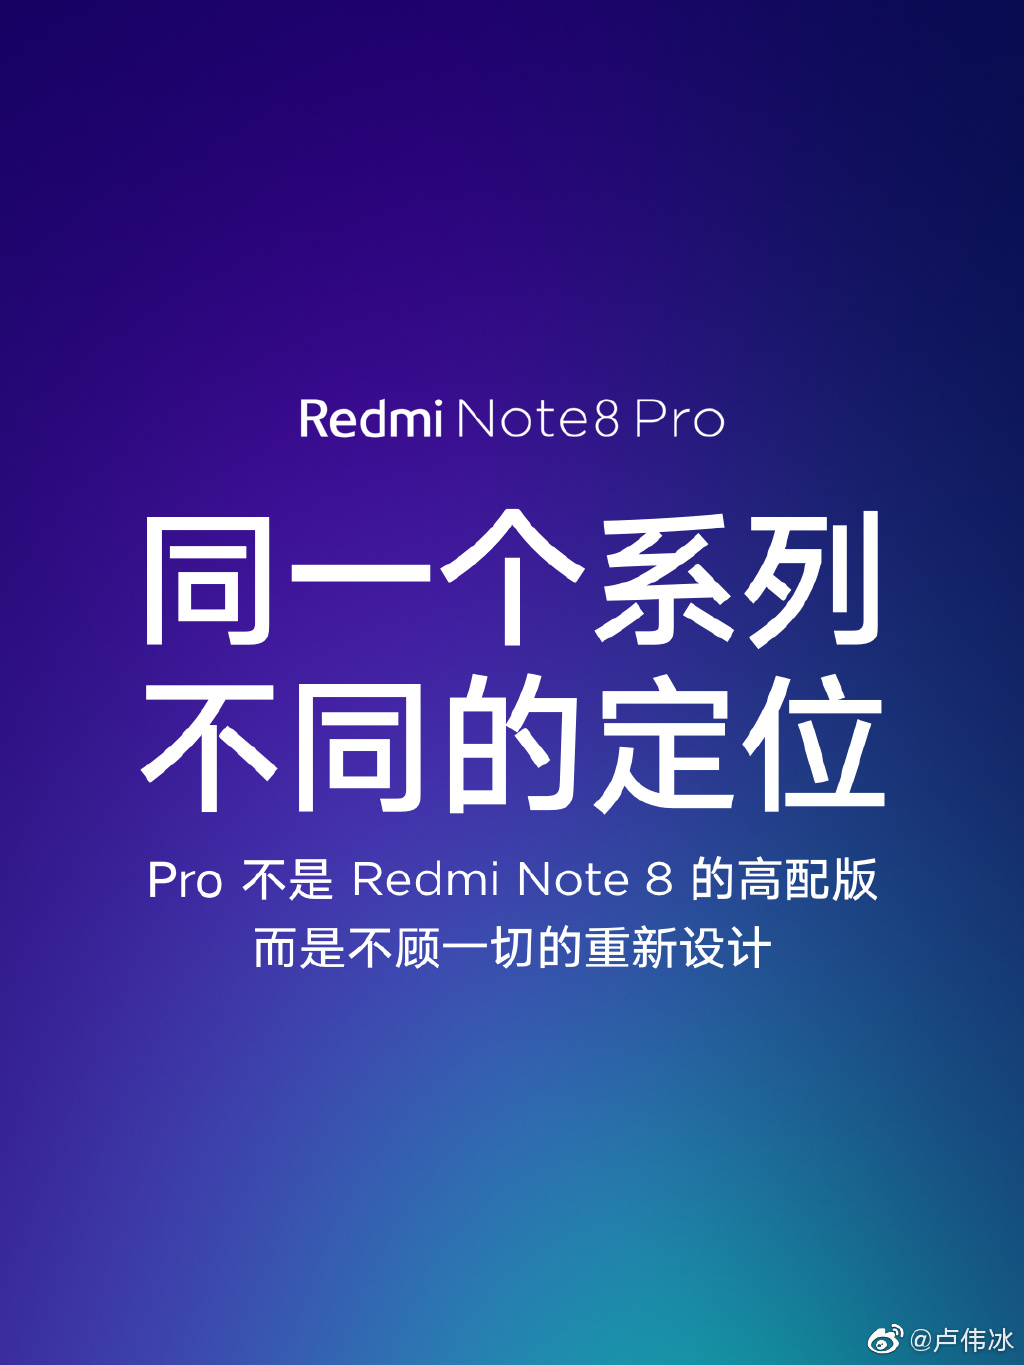 卢伟冰：Note 8 Pro不是高配版 是不顾一切的重新设计